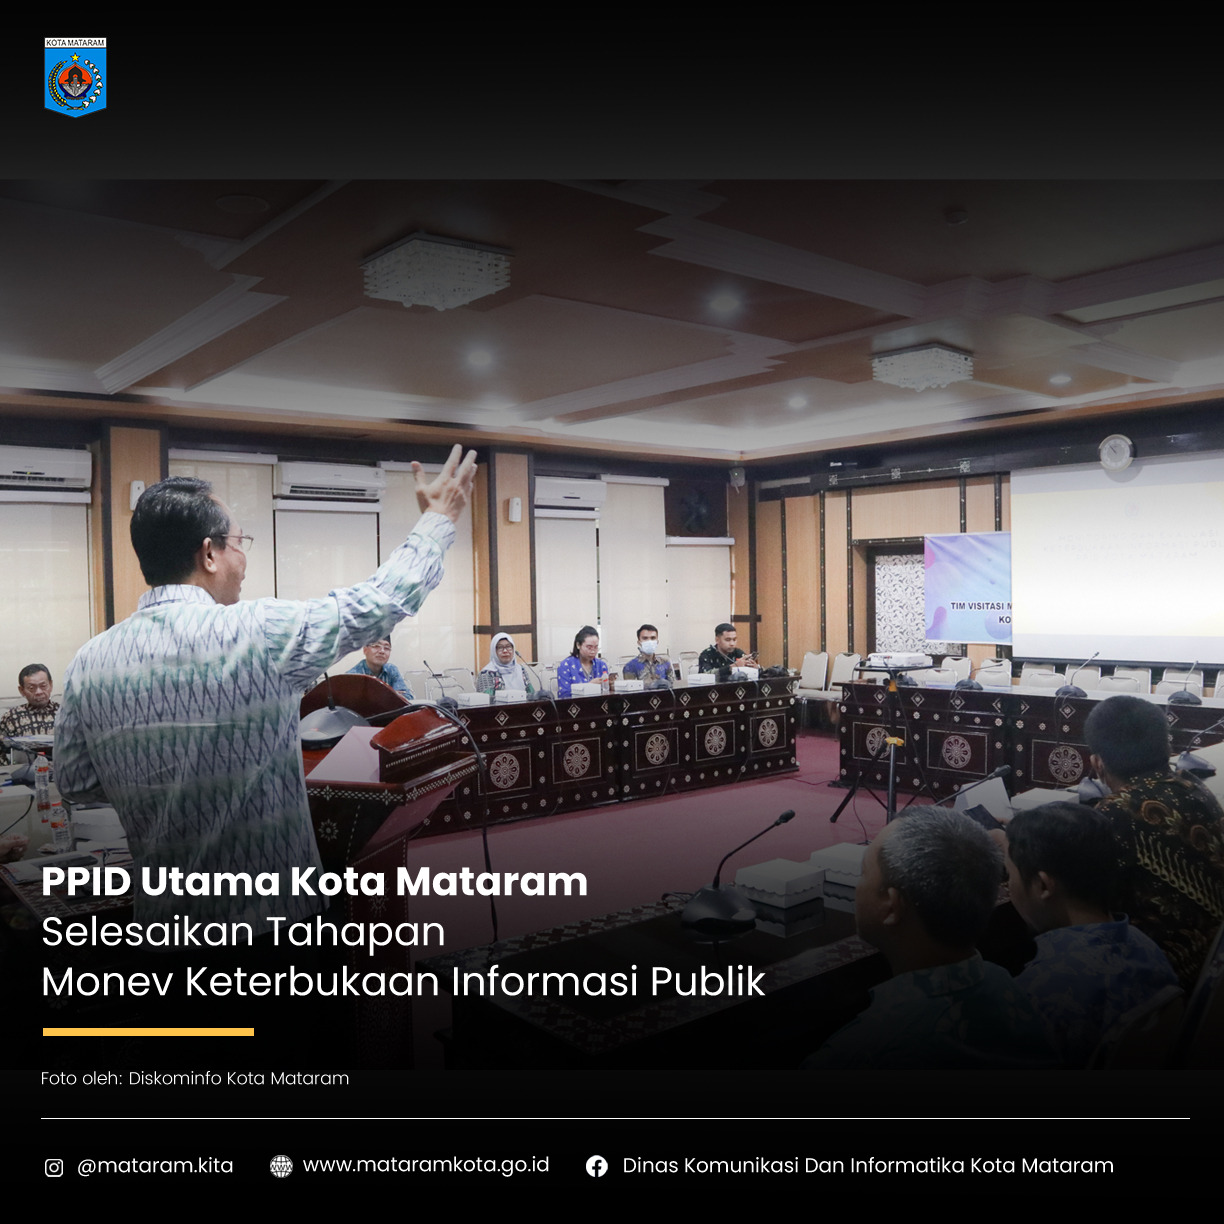 PPID Utama Kota Mataram selesaikan Tahapan Monev Keterbukaan Informasi Publik Tahun 2022